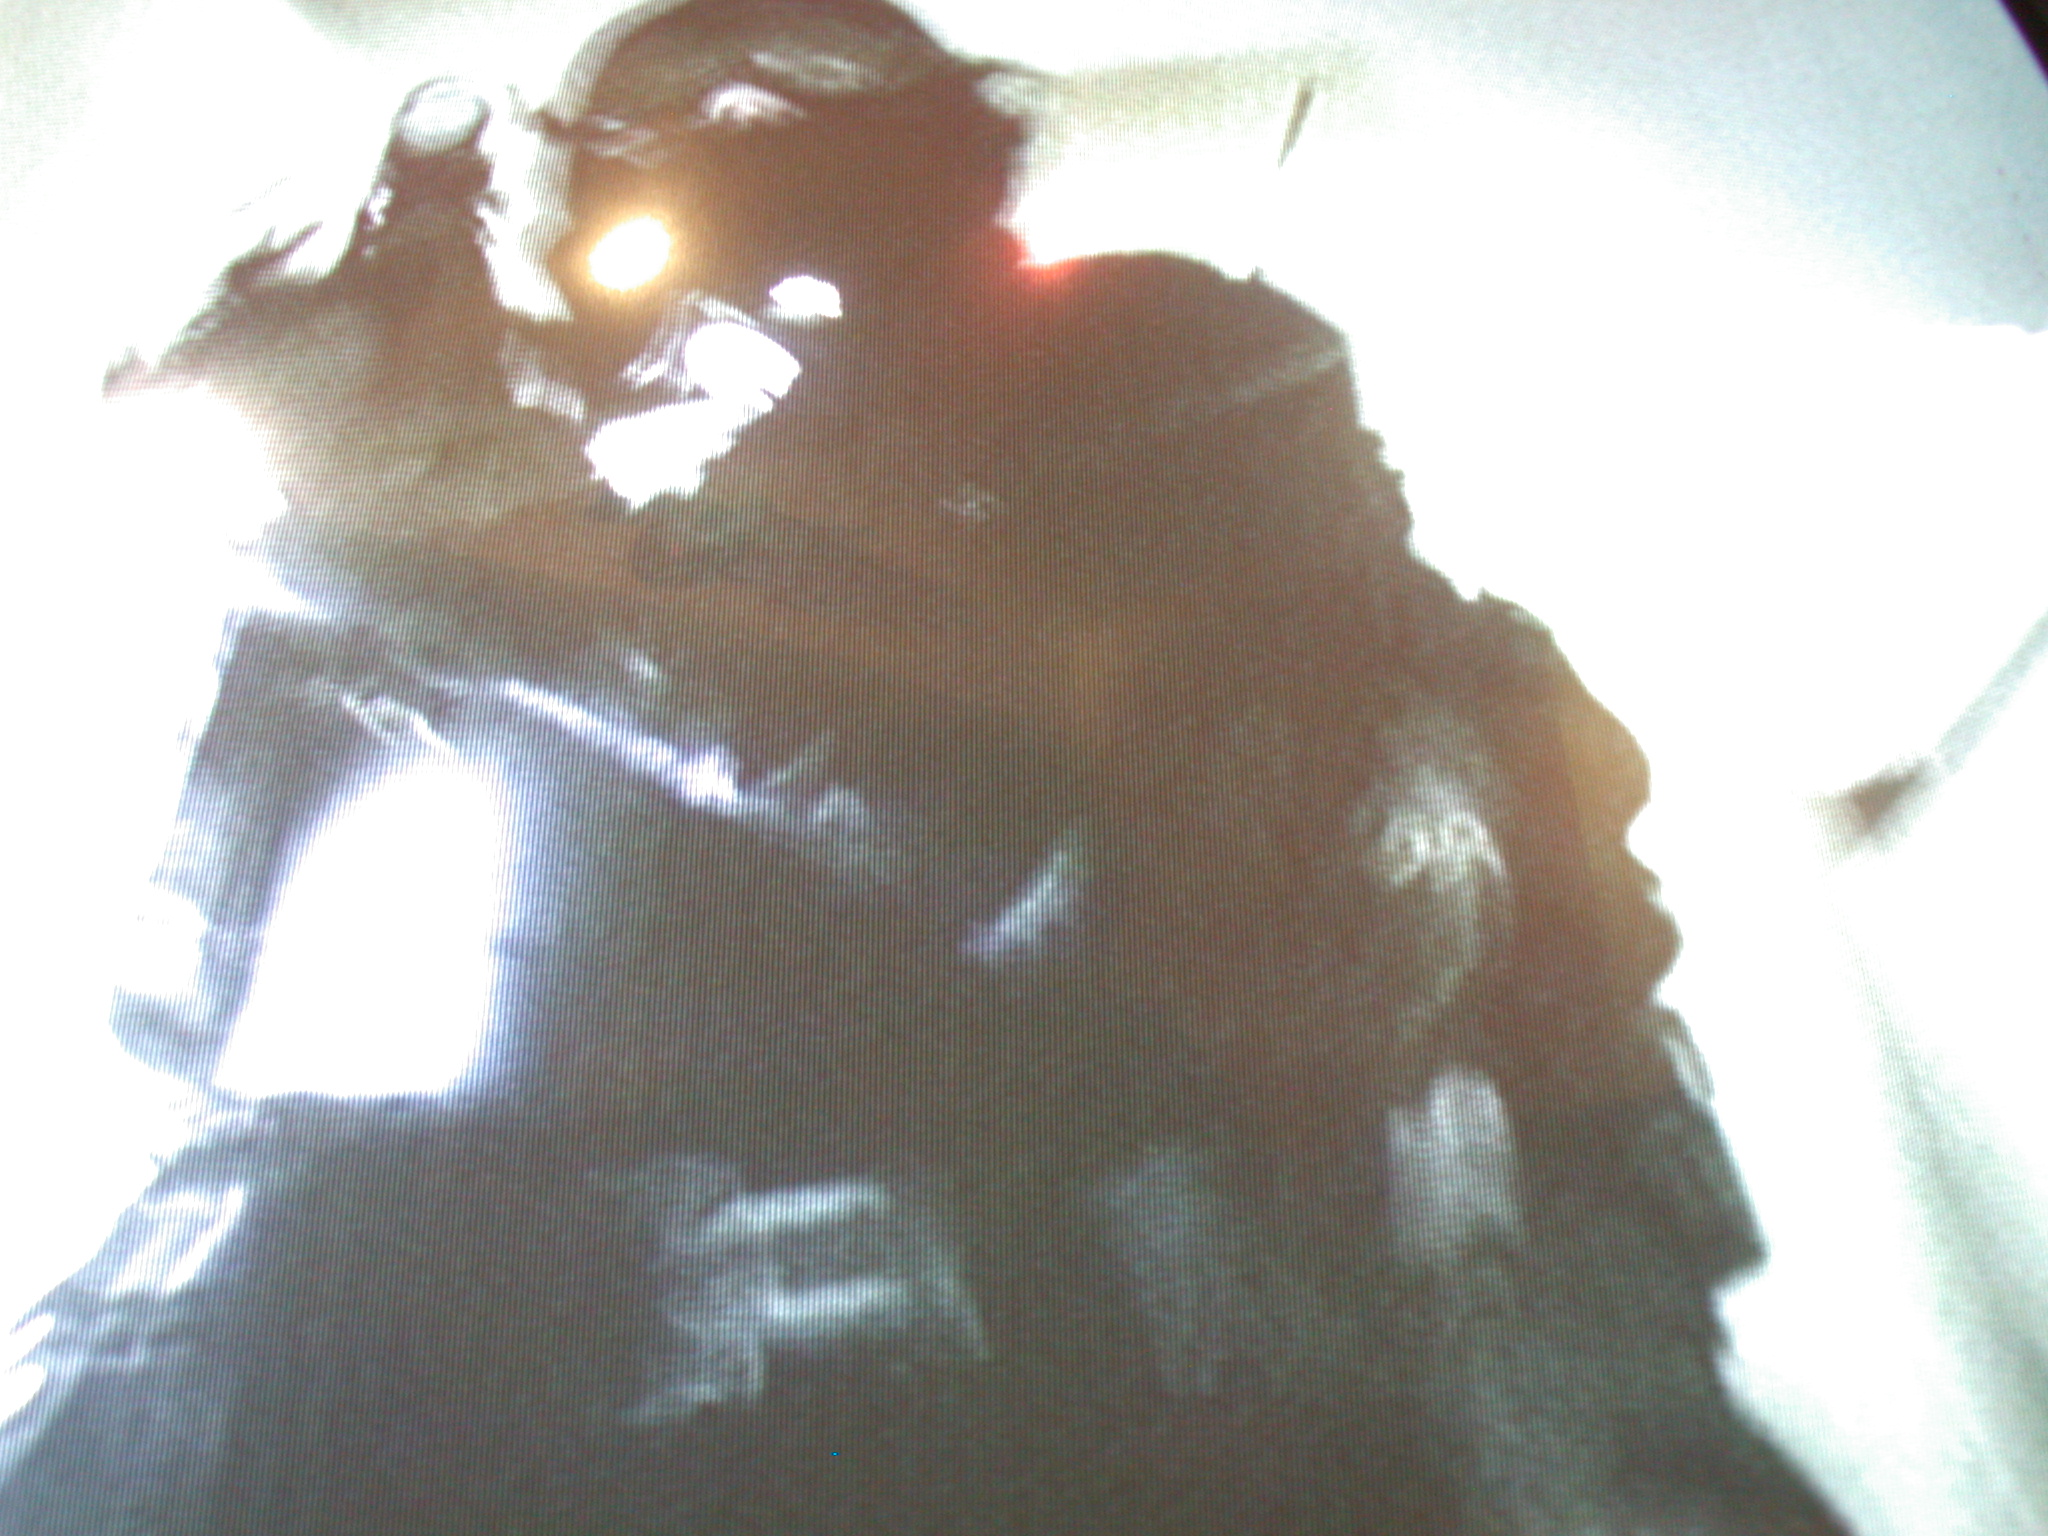 swat nature characters humanoids swatteam raid screenshot television tv police man men fbi silhouette